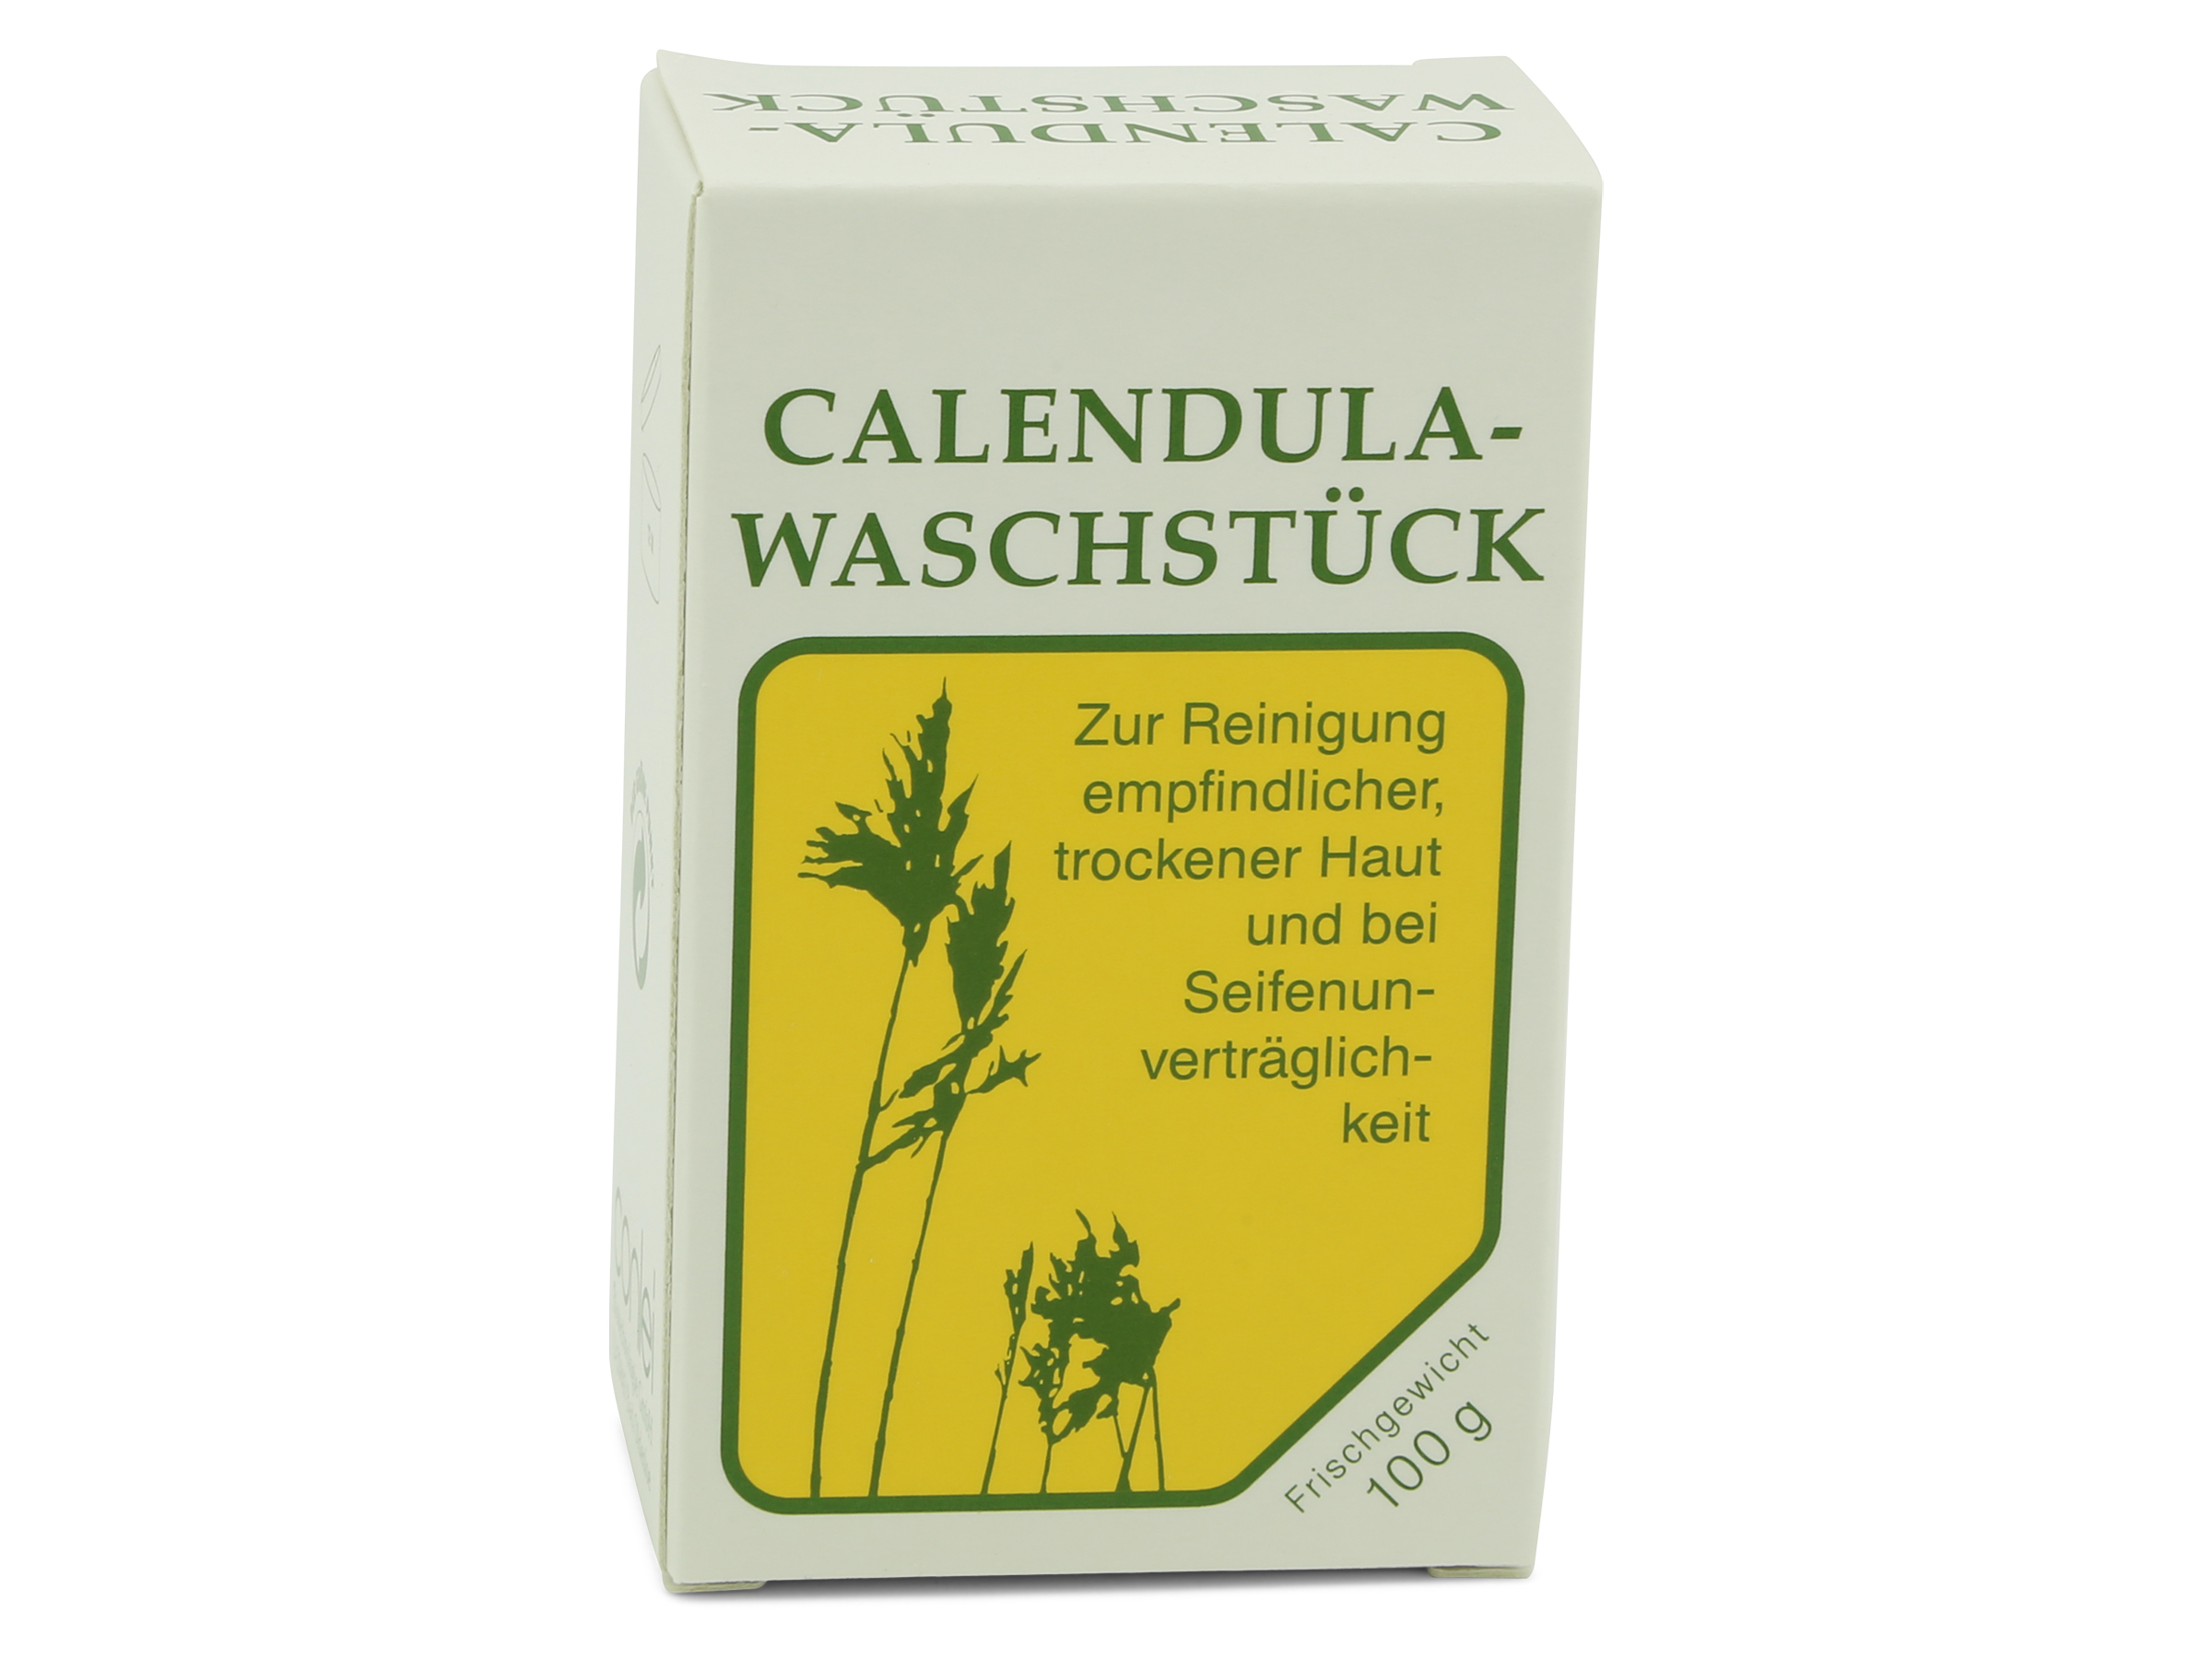 Conlei - Calendula Waschstück 100g